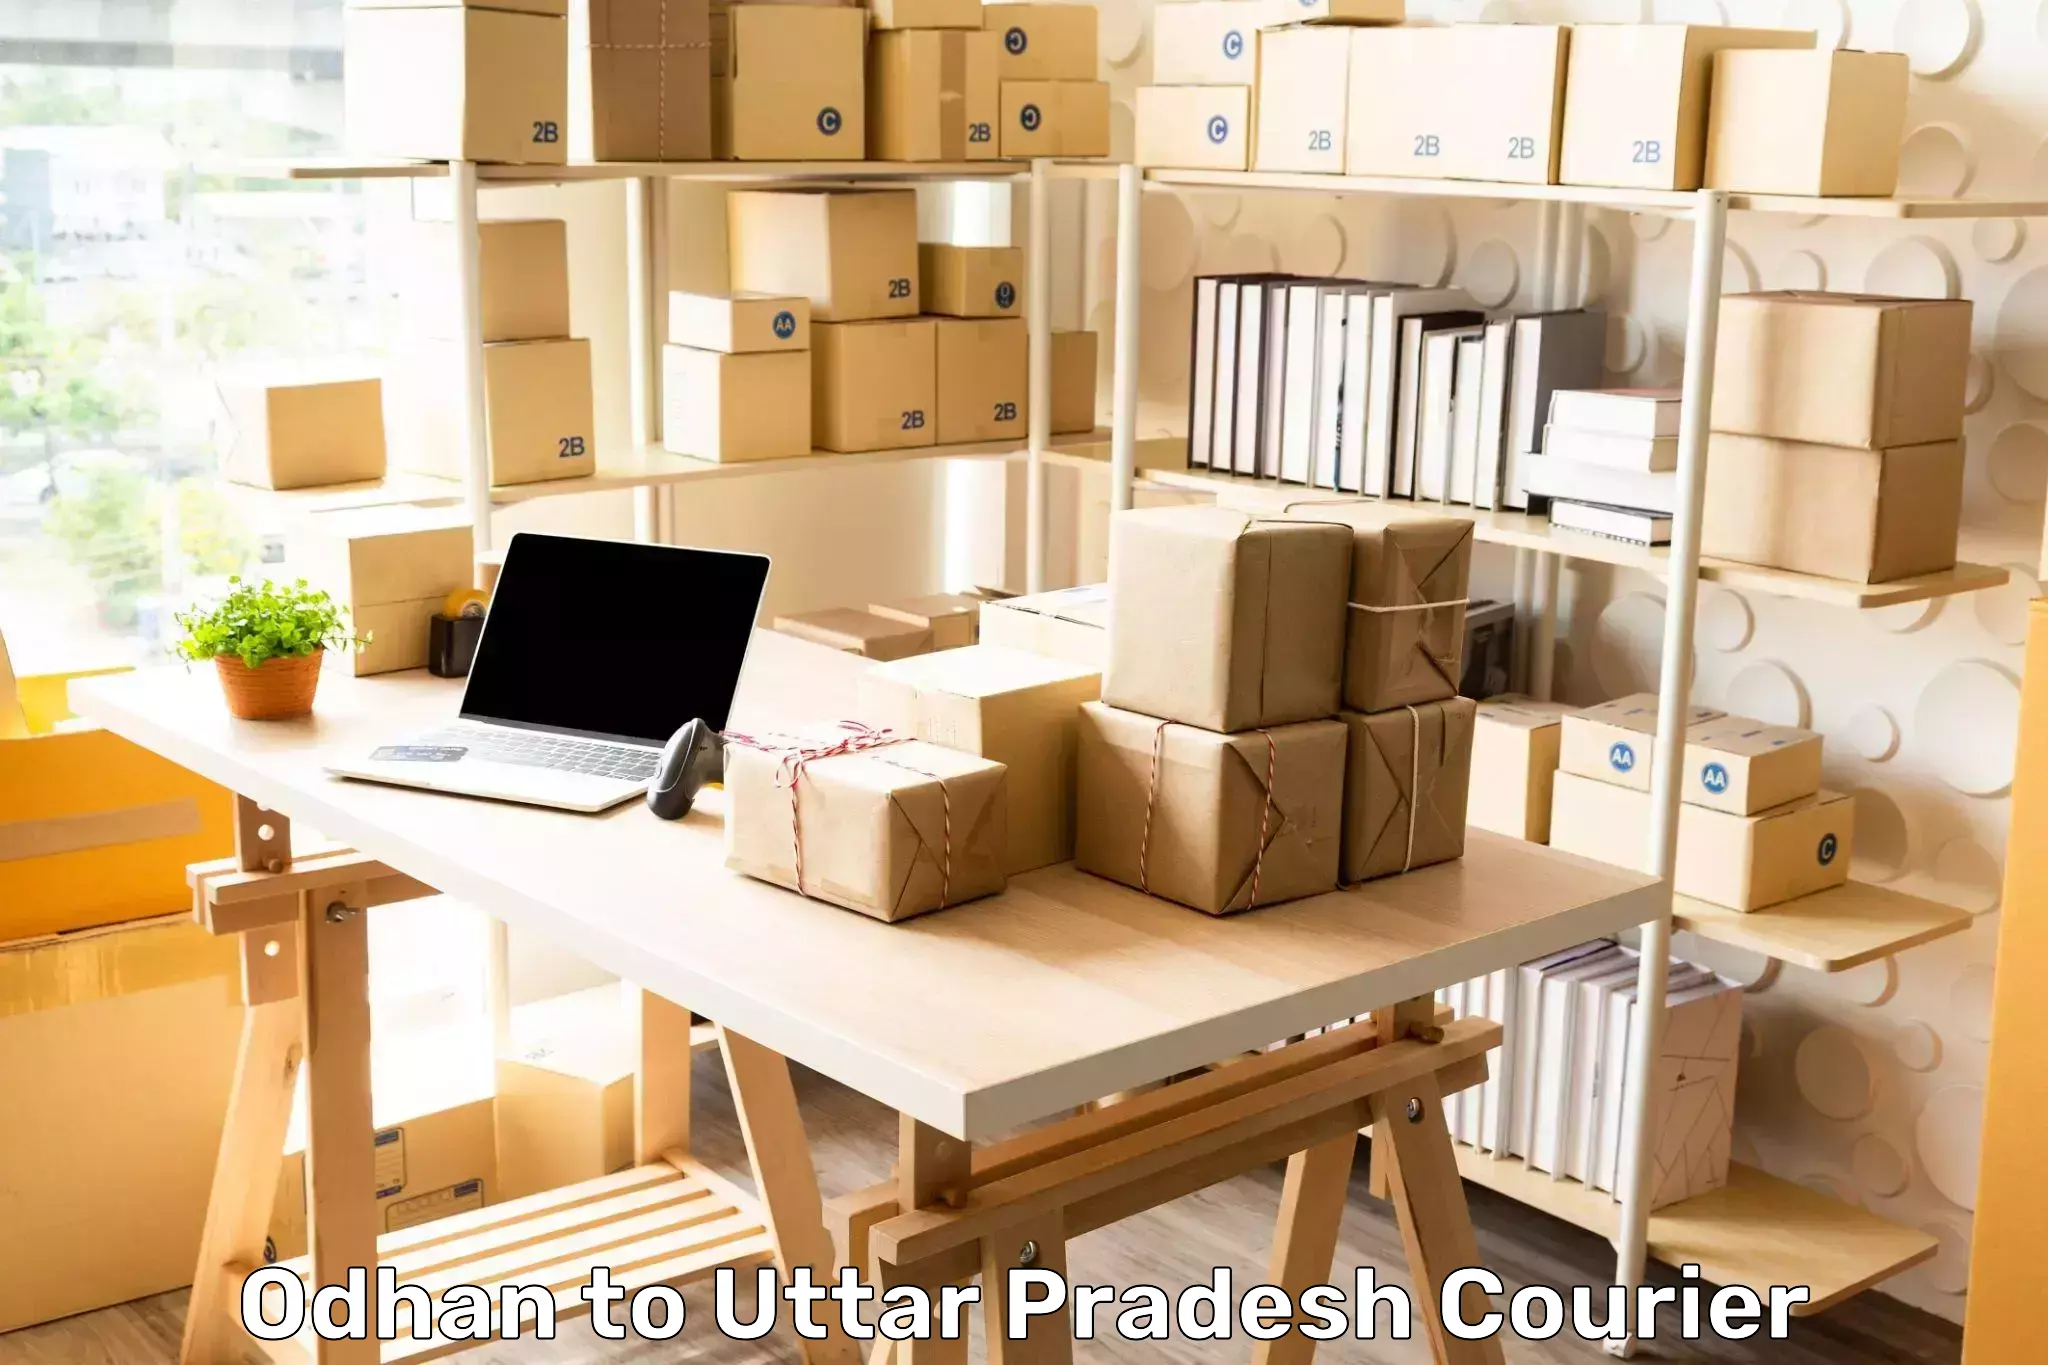 Package forwarding Odhan to Aligarh Muslim University